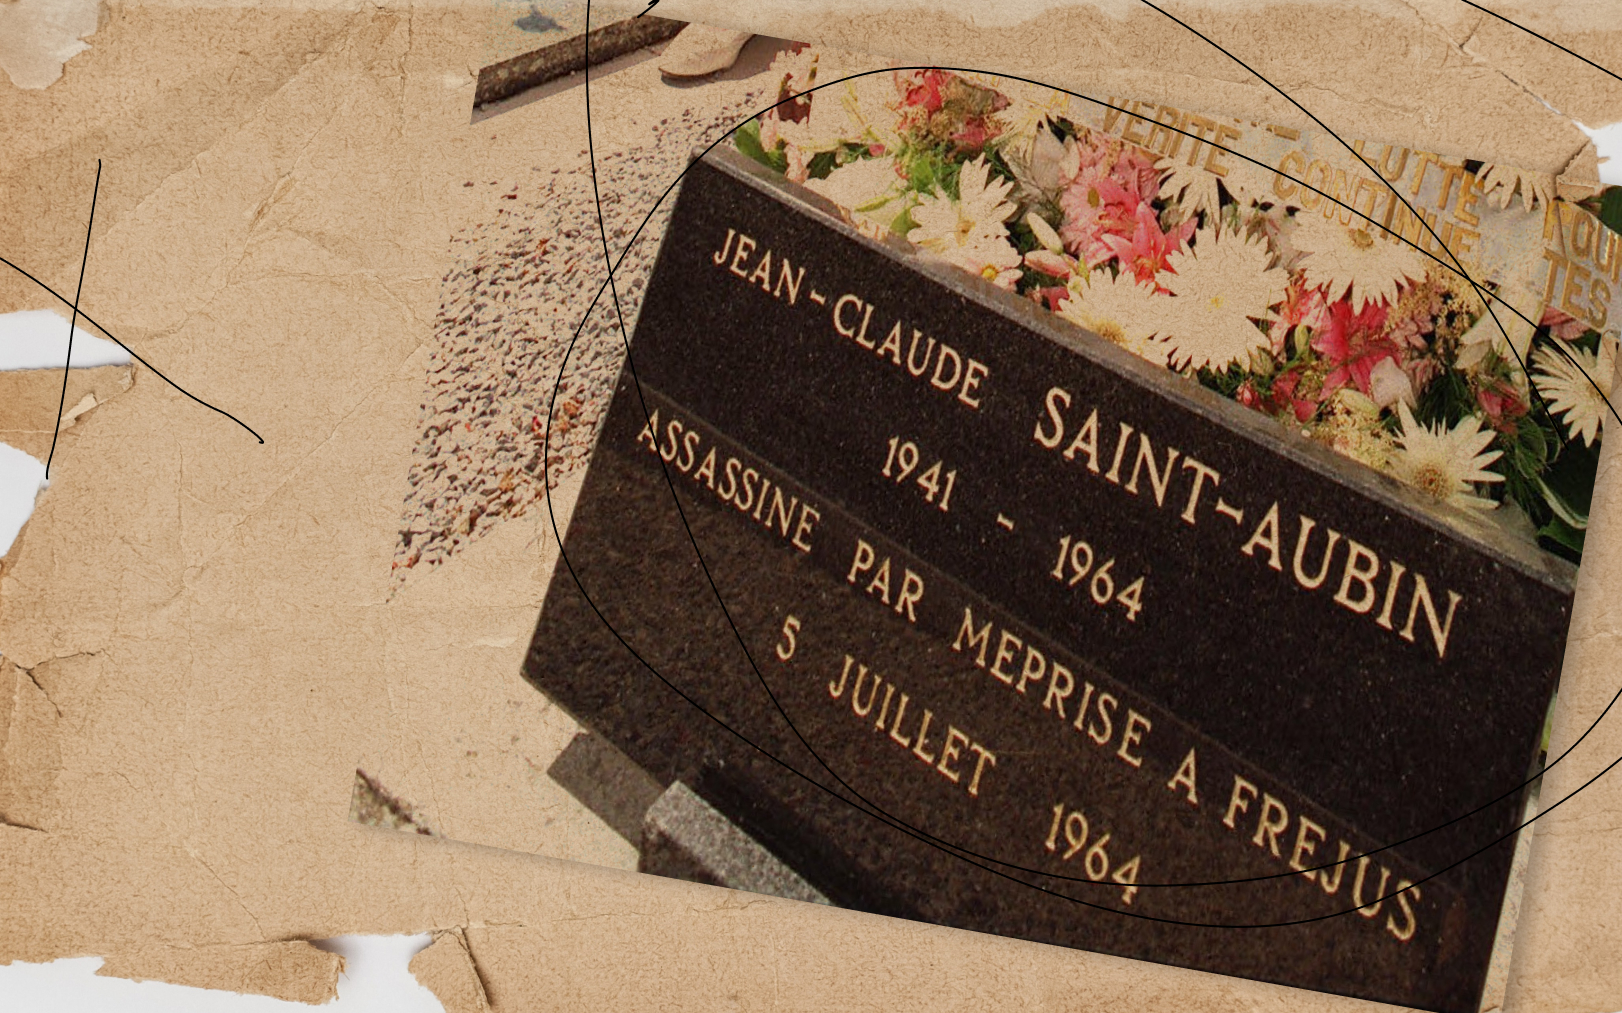 La tombe de Jean-Claude Saint-Aubin, au cimetière de Talant, à Dijon. AFP/Gérard Cerles